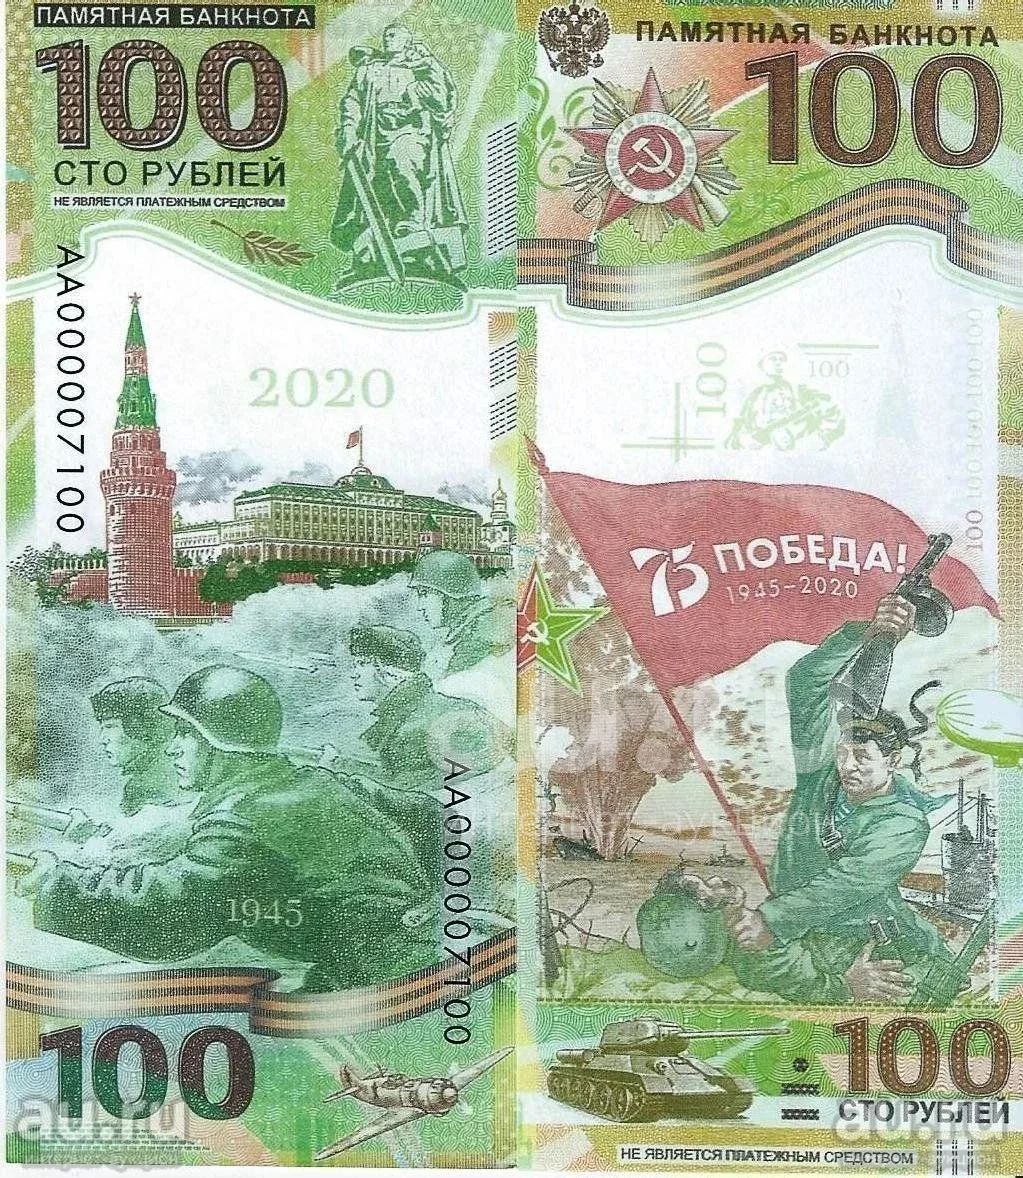 200 рублей 2020. 100 Рублей. Сторублевая купюра. 100 Рублей 2020. Памятная купюра 100 рублей 2020 года.